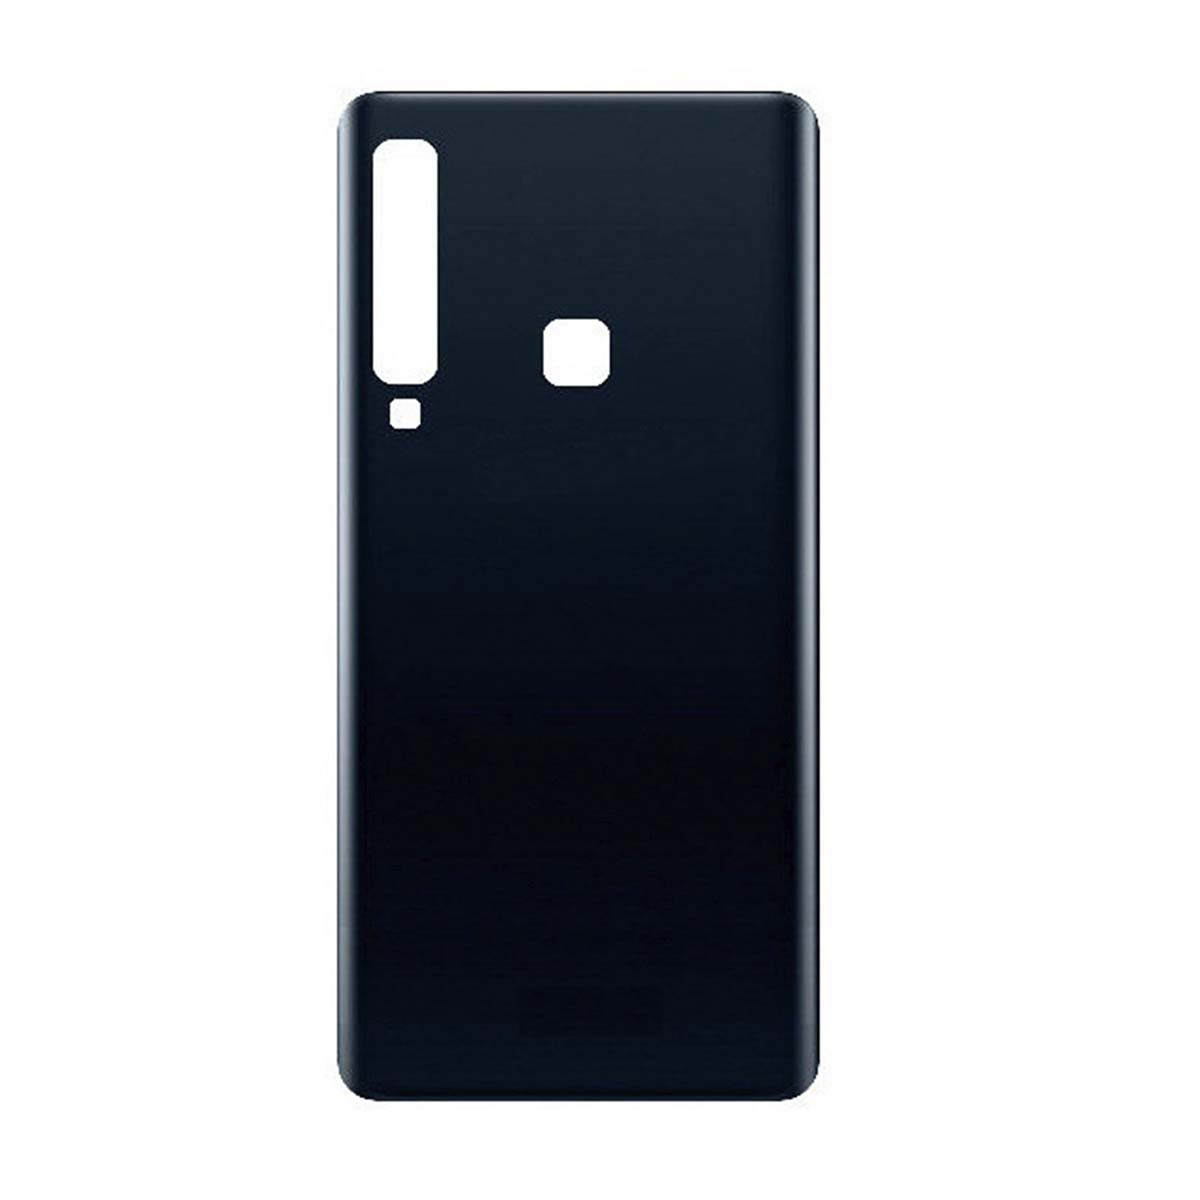 Крышка корпуса задняя для SAMSUNG Galaxy A9 2018 (SM-A920F), цвет черный